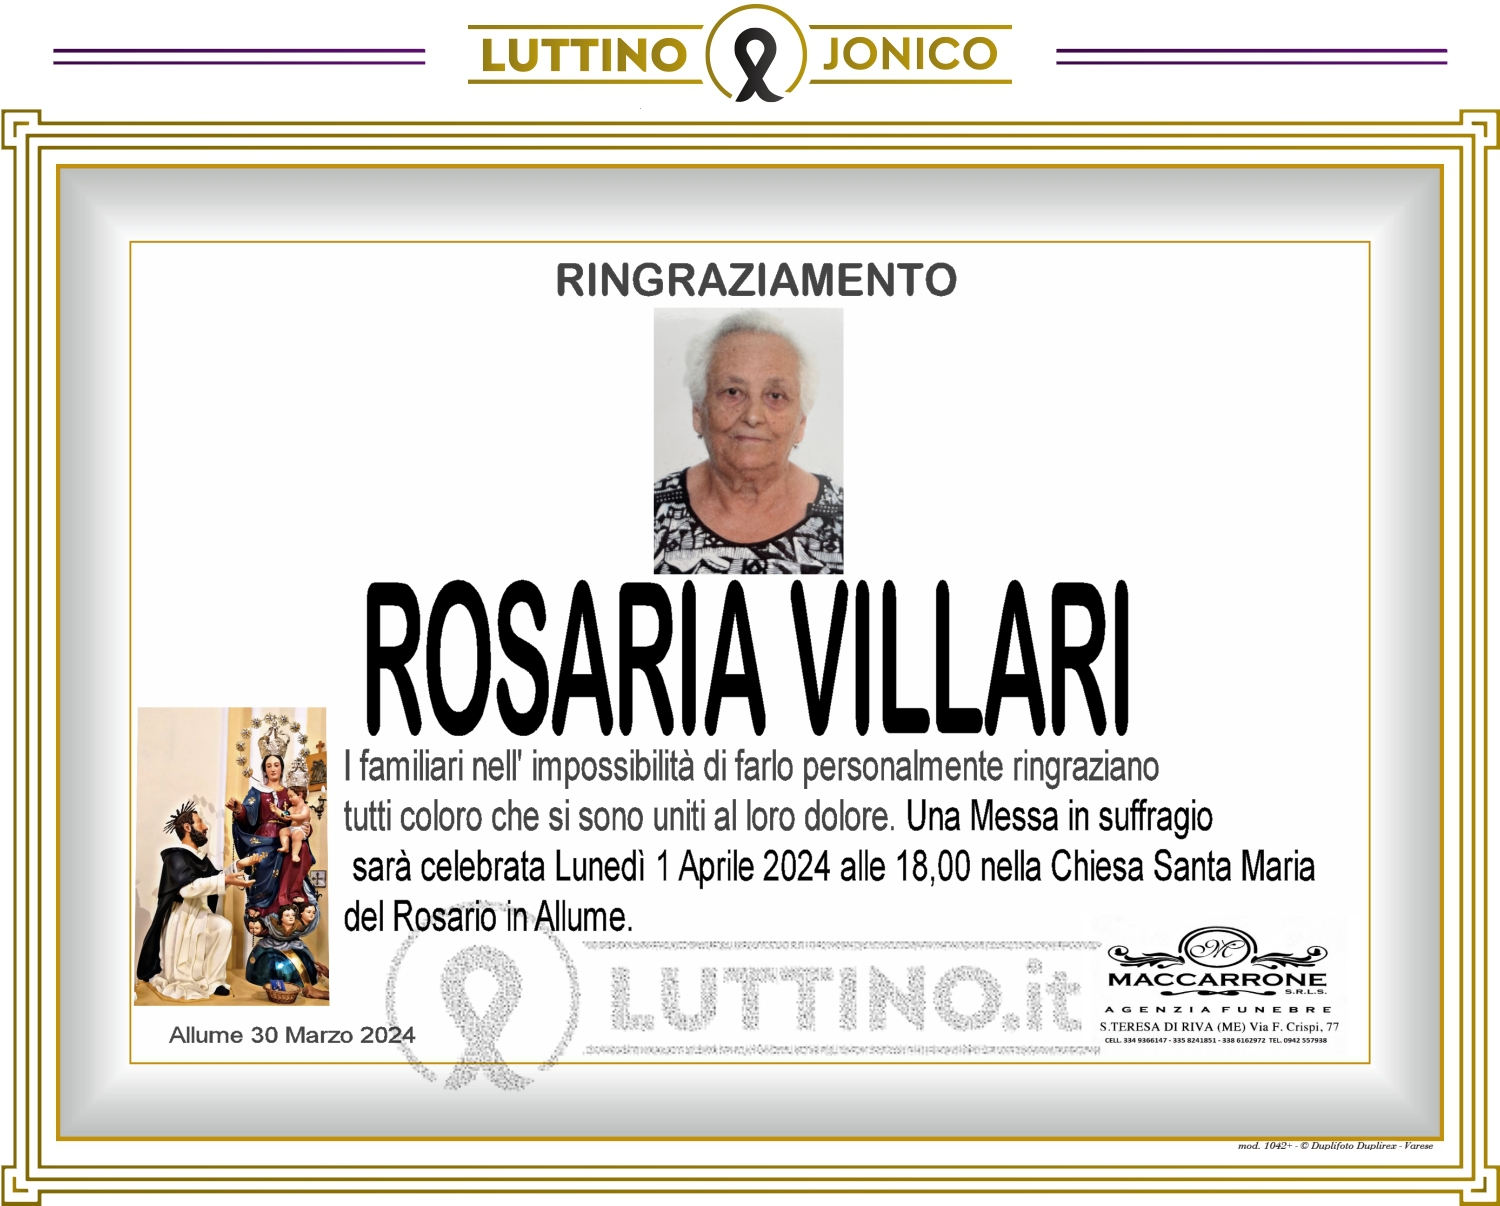 Rosaria Villari